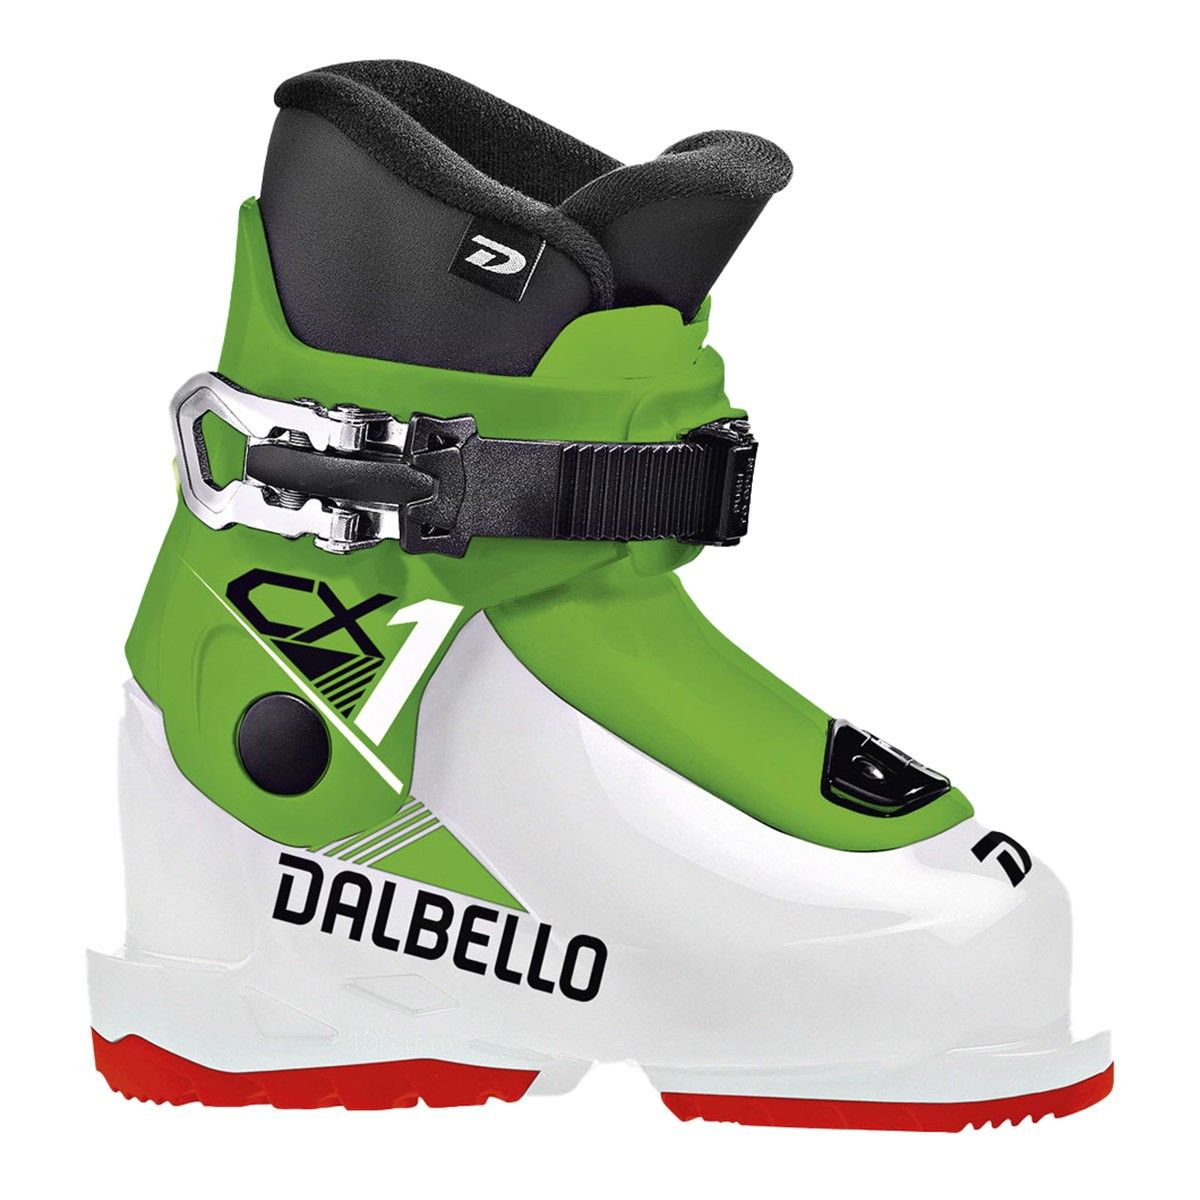  Scarponi sci Dalbello CX 1.0 GW (Colore: white race green, Taglia: 18.5) 